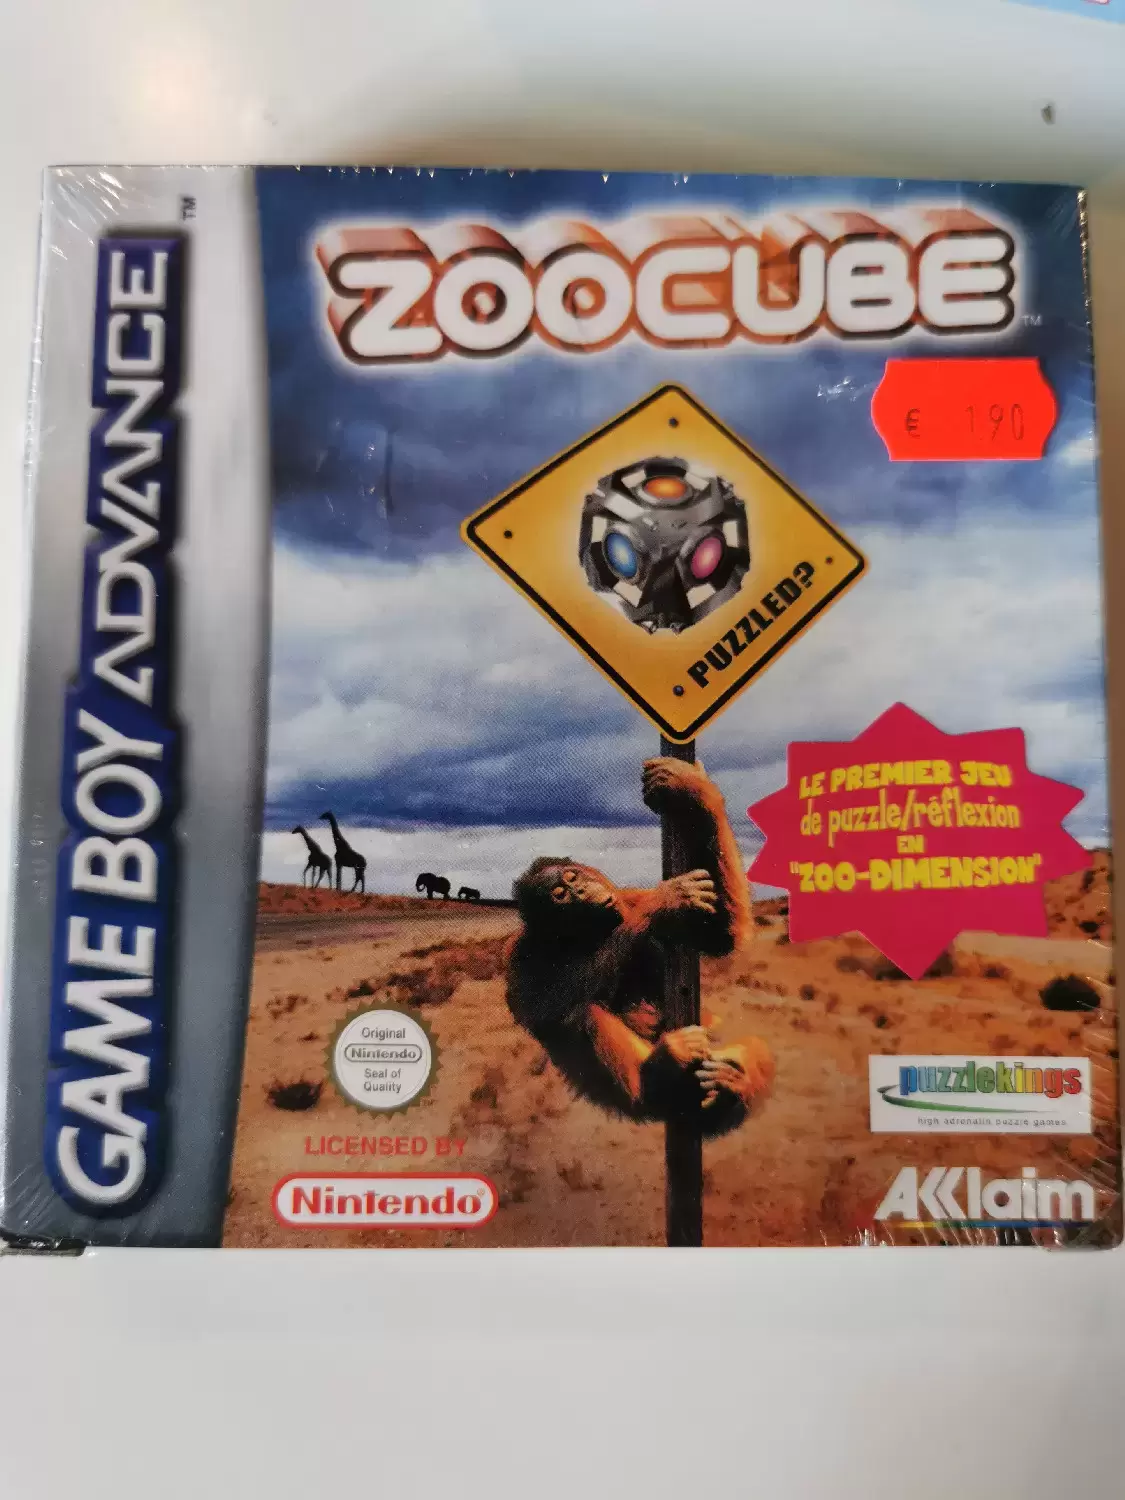 Game Boy Advance Games - Zoocube